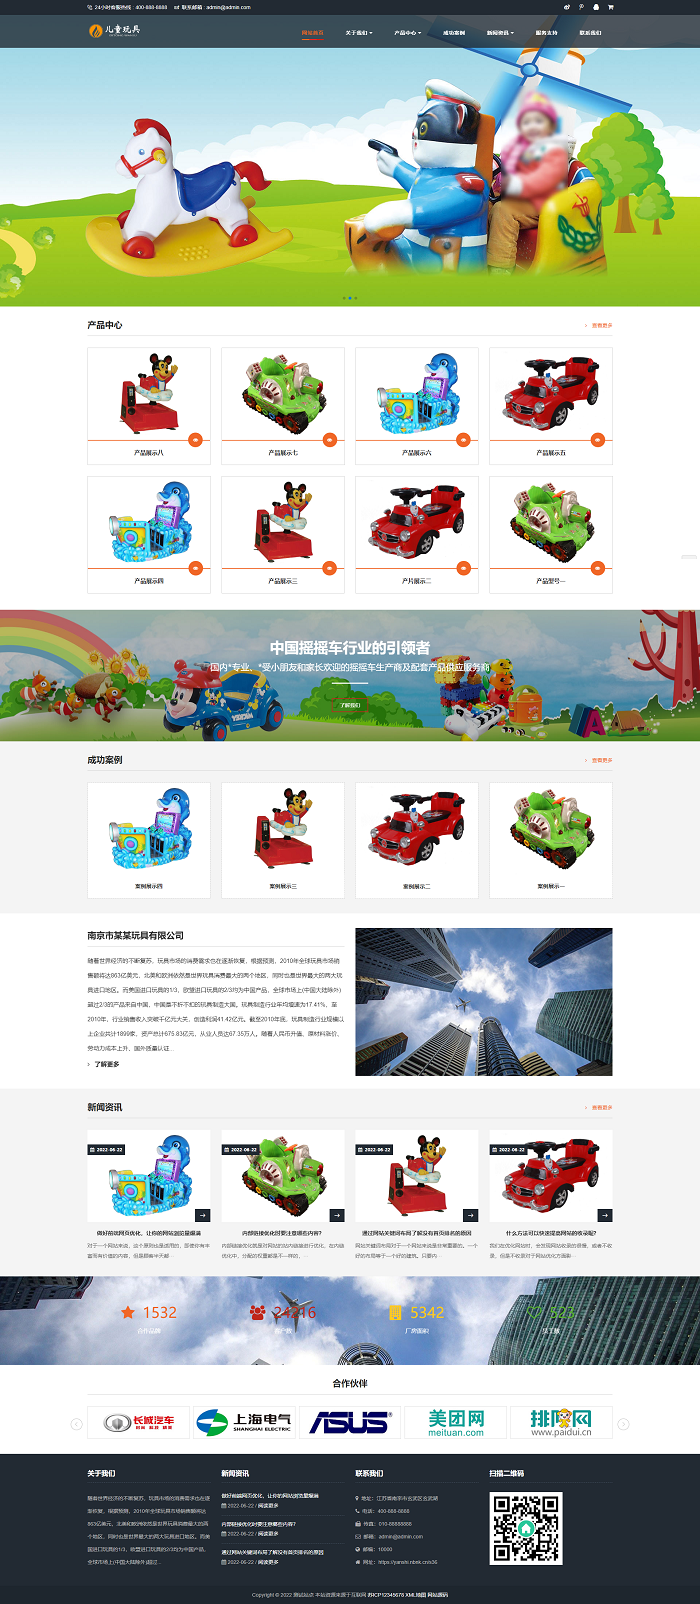 儿童乐园玩具批发制造类企业网站模板 响应式玩具游乐设施网站源码下载